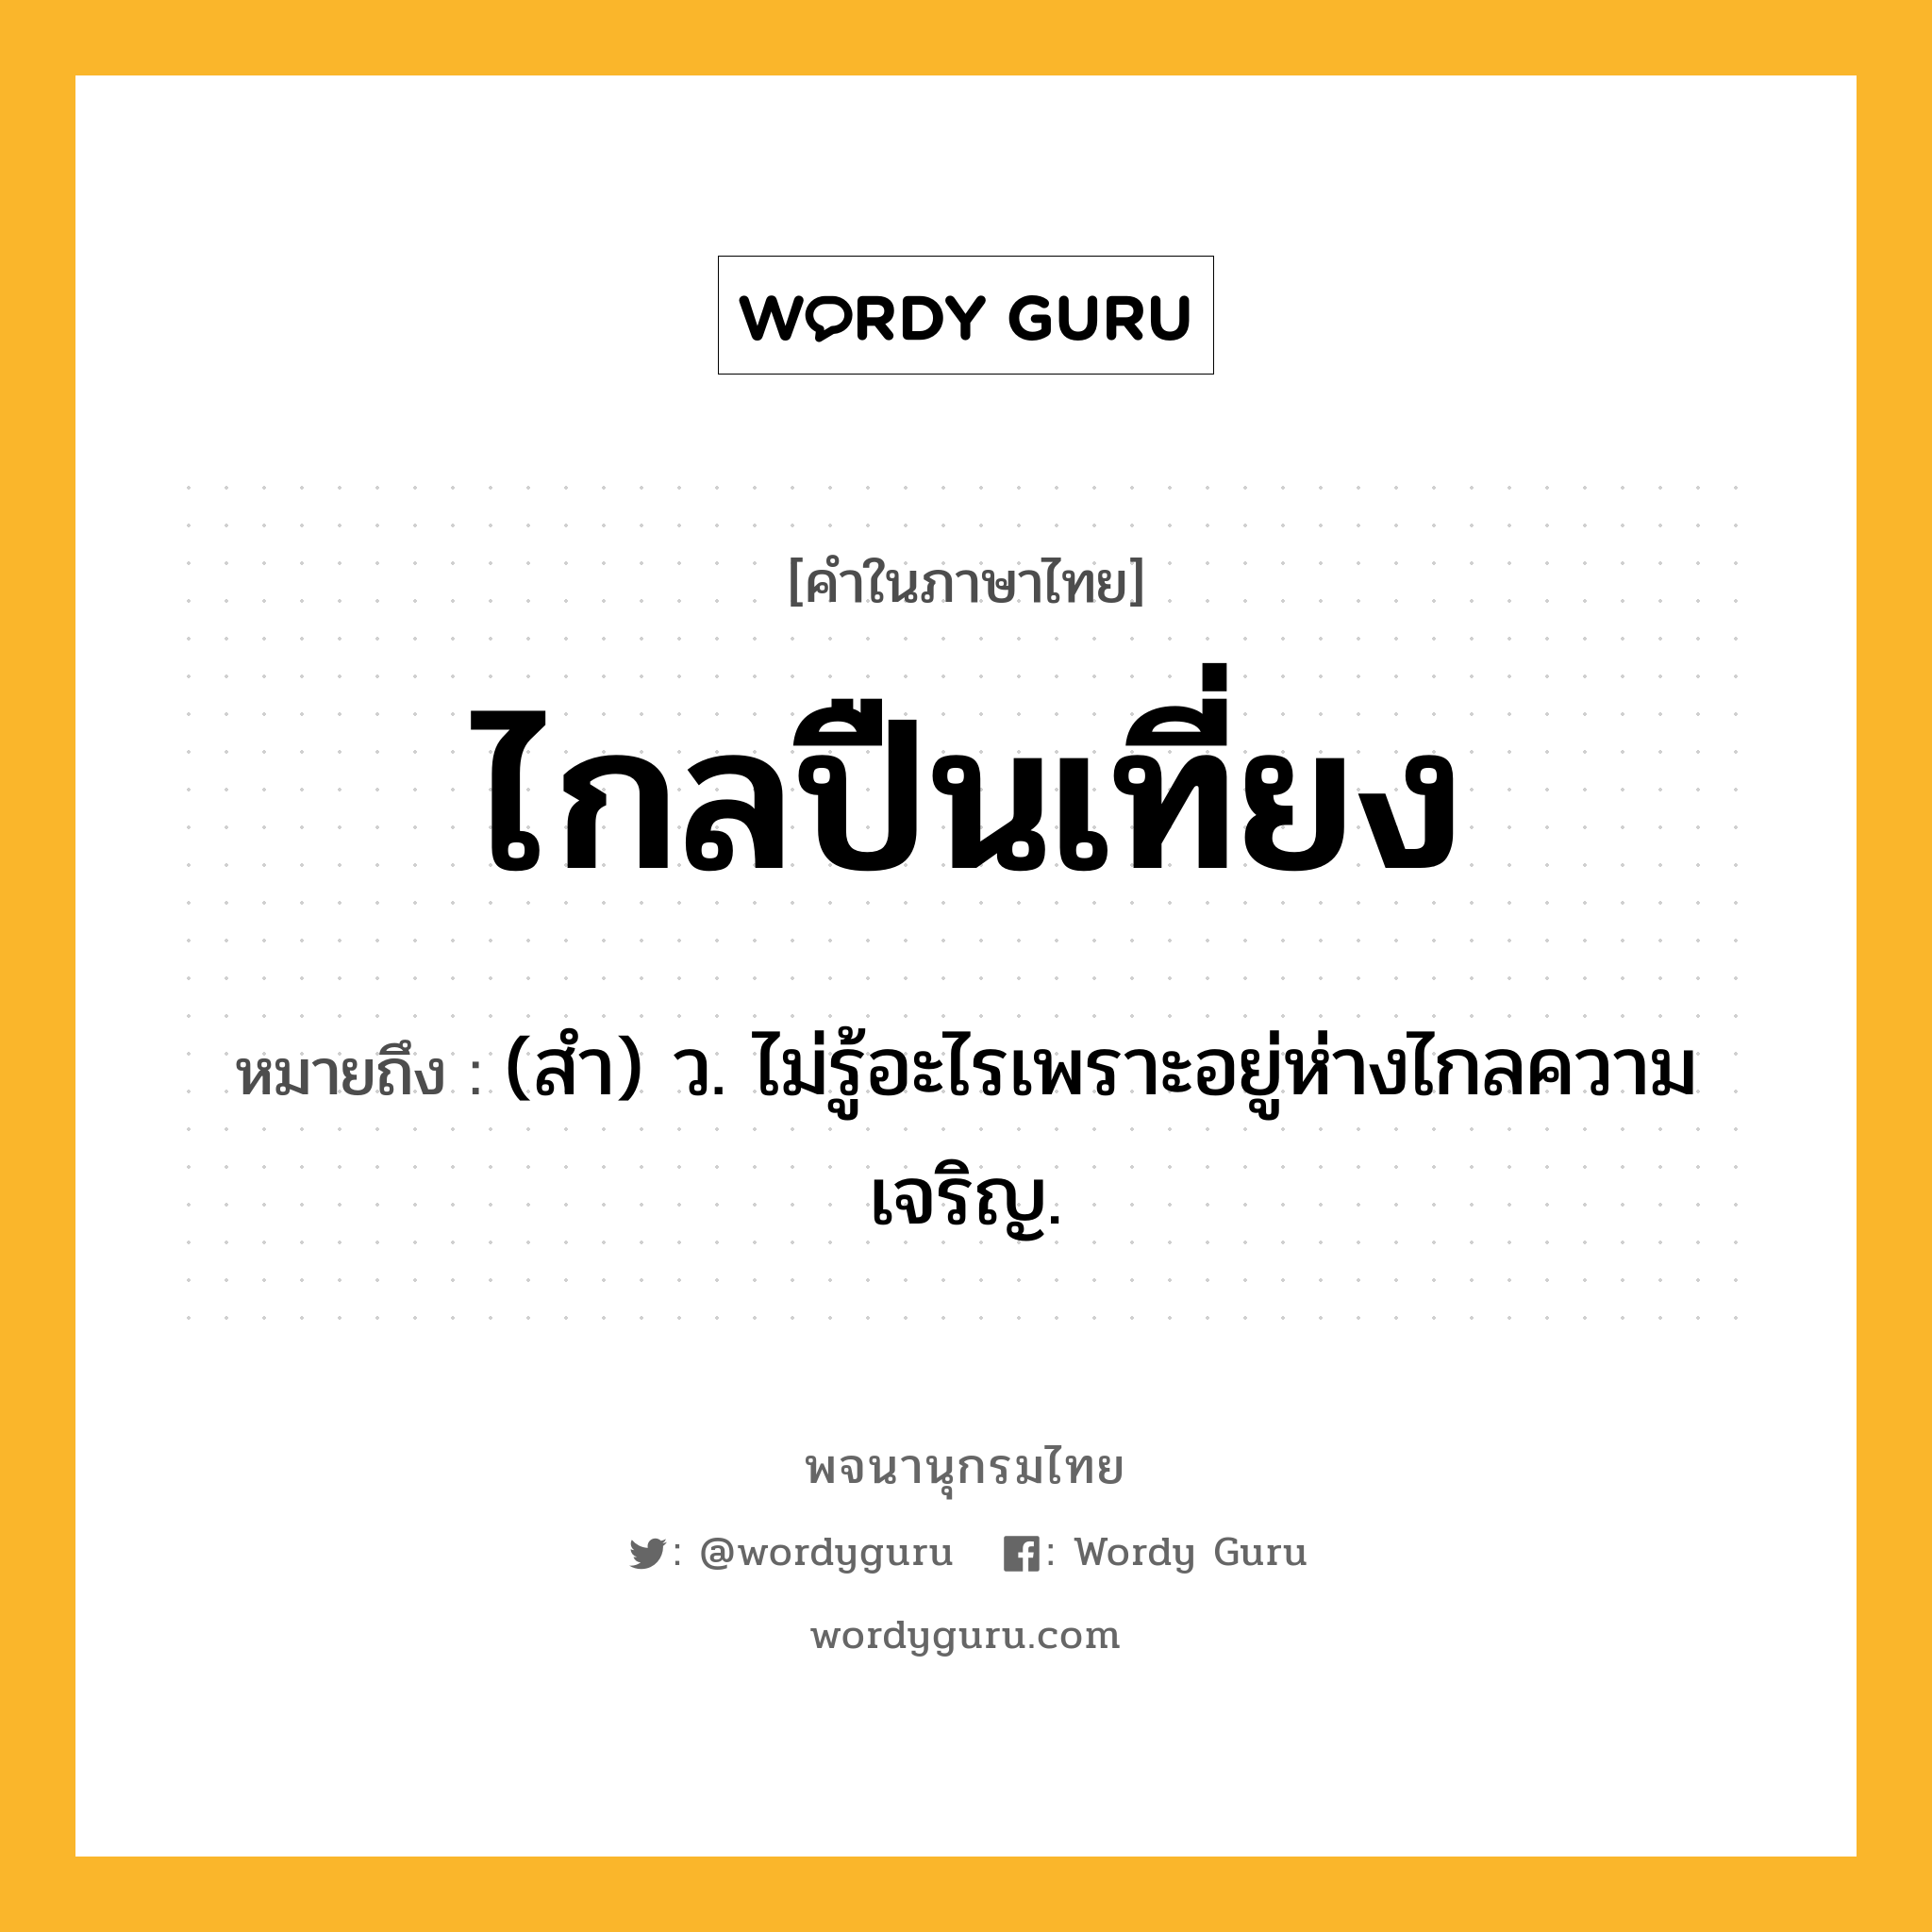 ไกลปืนเที่ยง หมายถึงอะไร?, คำในภาษาไทย ไกลปืนเที่ยง หมายถึง (สํา) ว. ไม่รู้อะไรเพราะอยู่ห่างไกลความเจริญ.